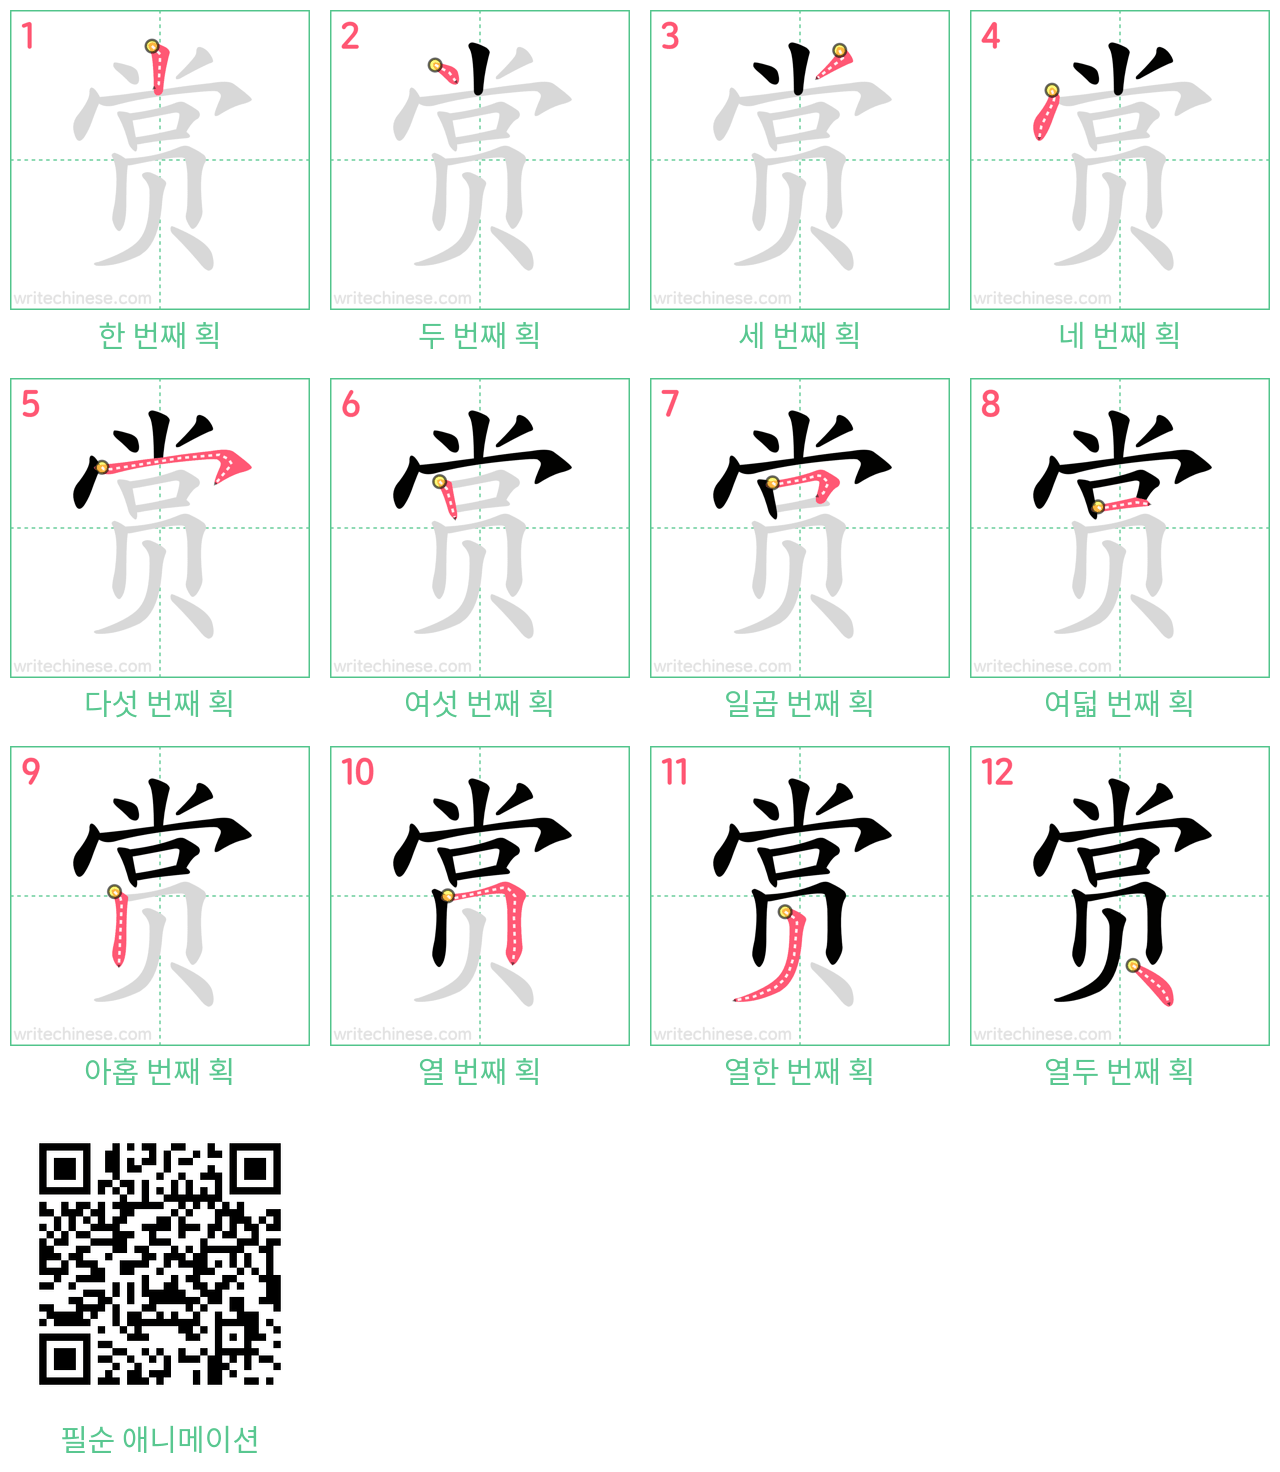 赏 step-by-step stroke order diagrams